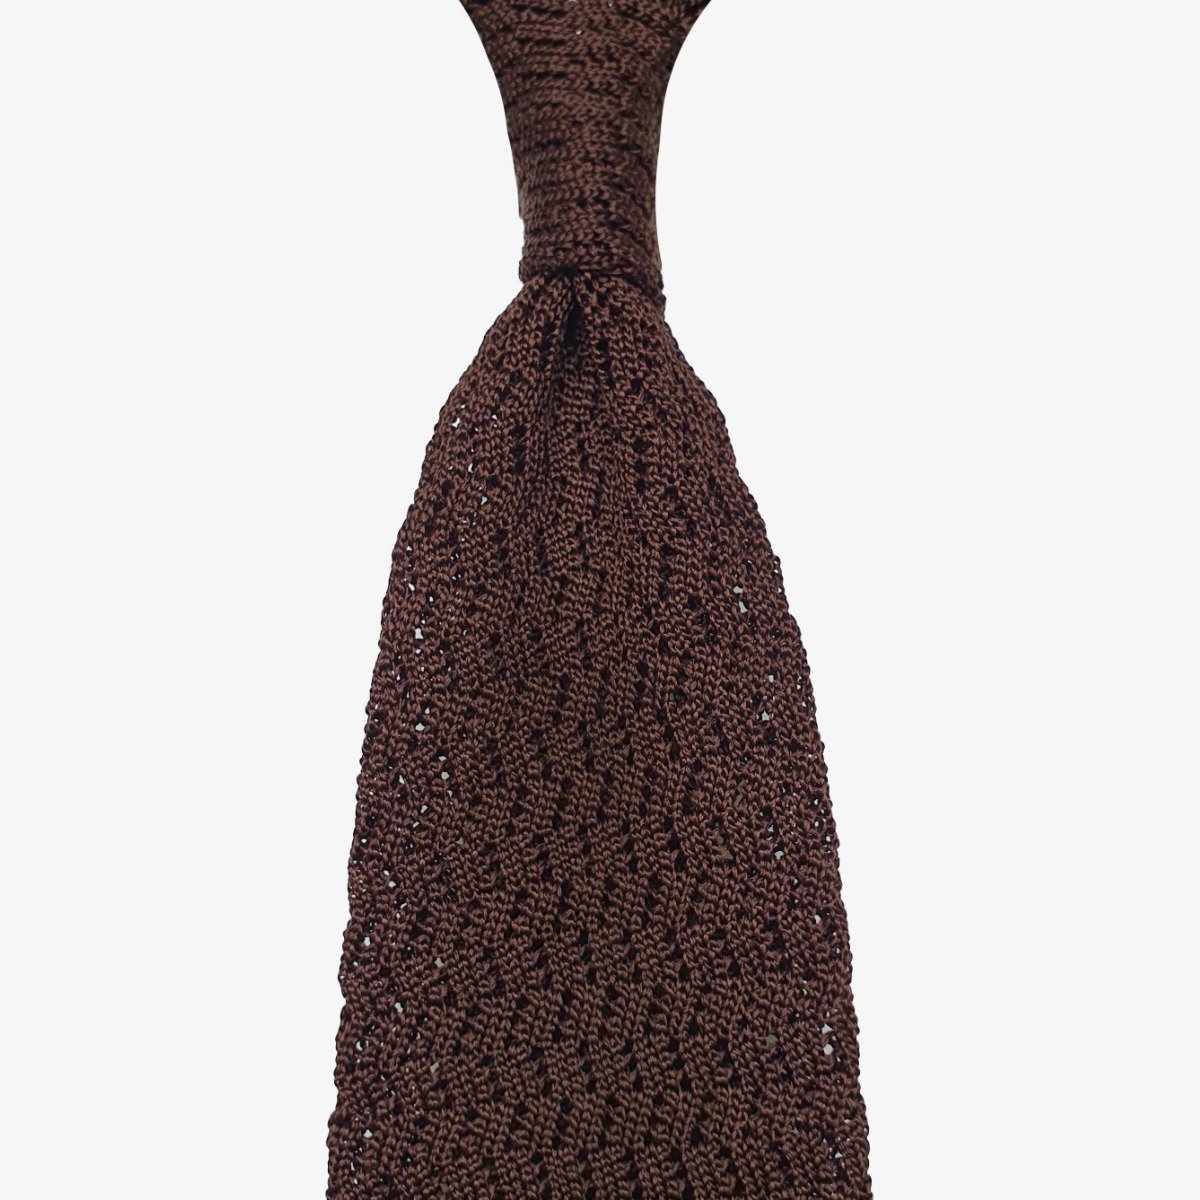 Shibumi Firenze dark brown zigzag knitted silk tie